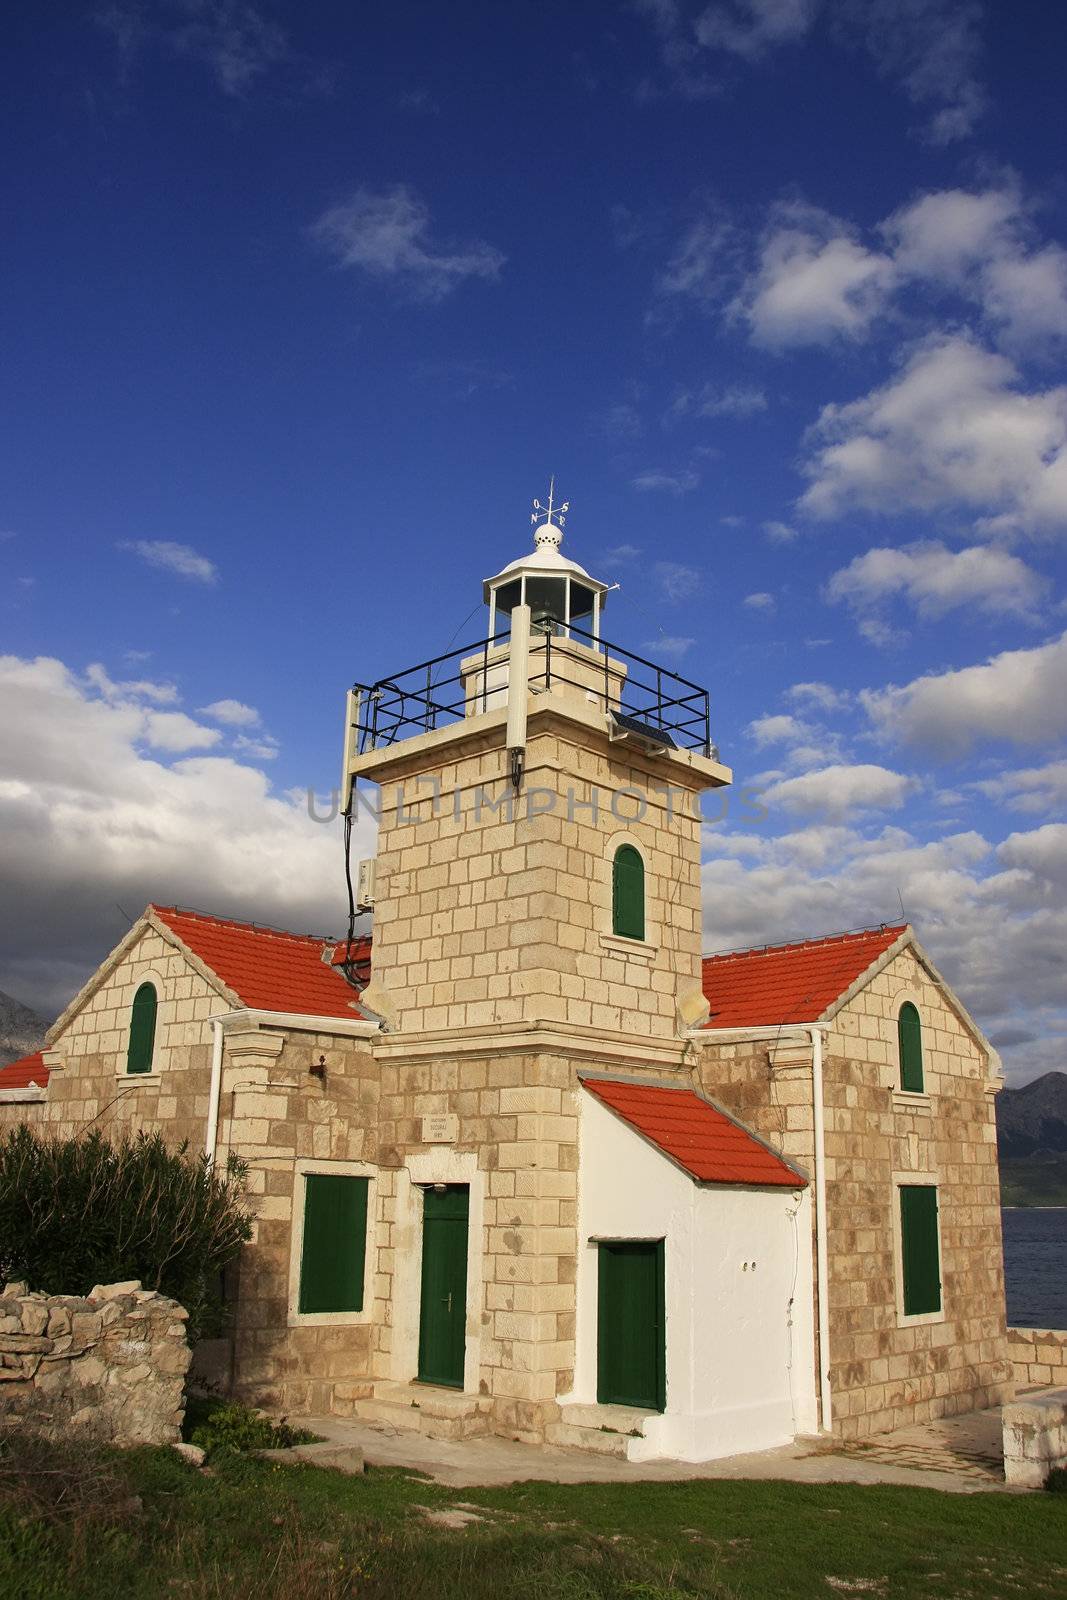 Lighthouse on Hvar island, Croatia by donya_nedomam